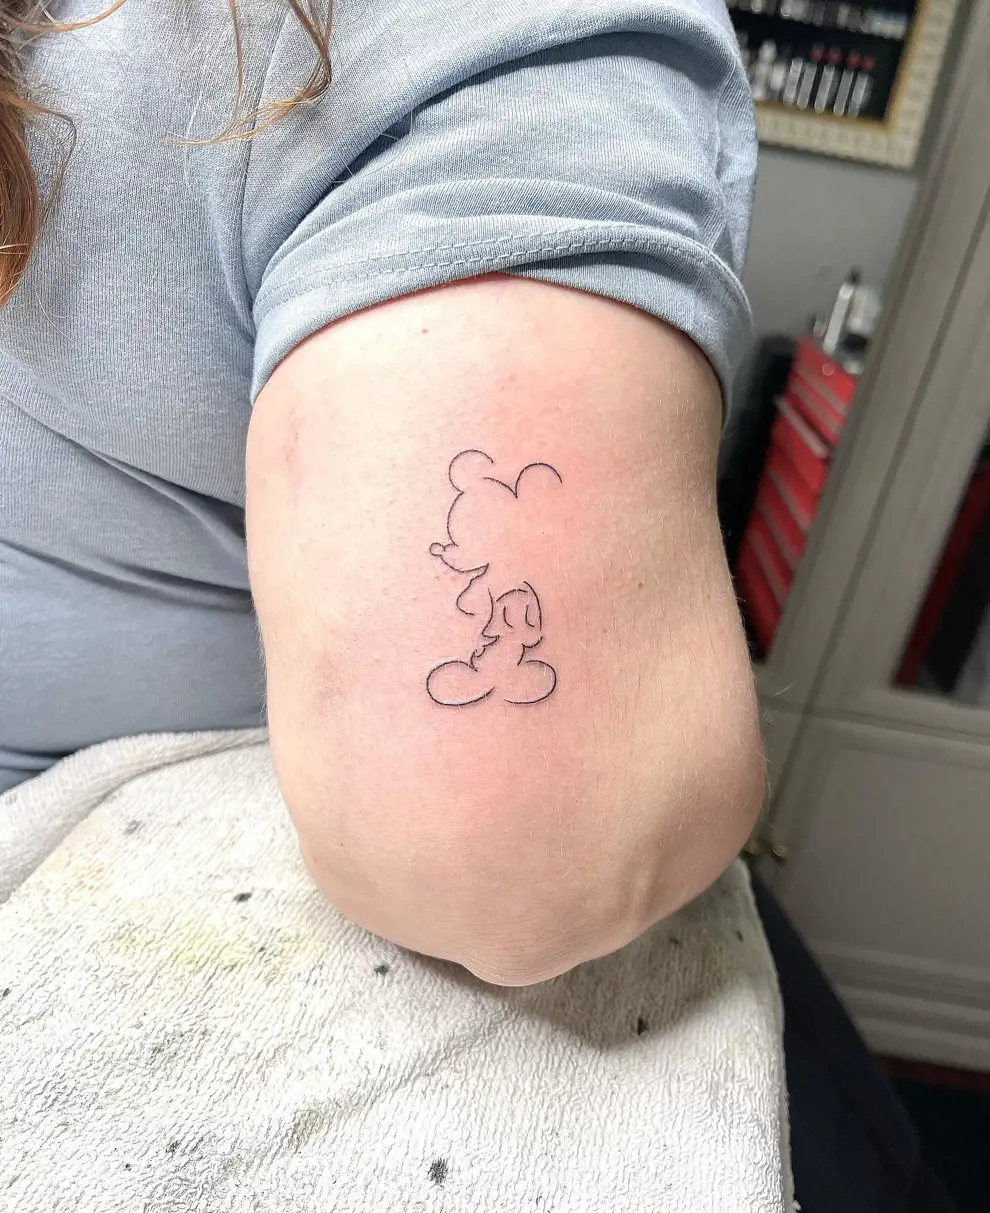 Tatuajes minimalistas mujer: silueta de Mickey